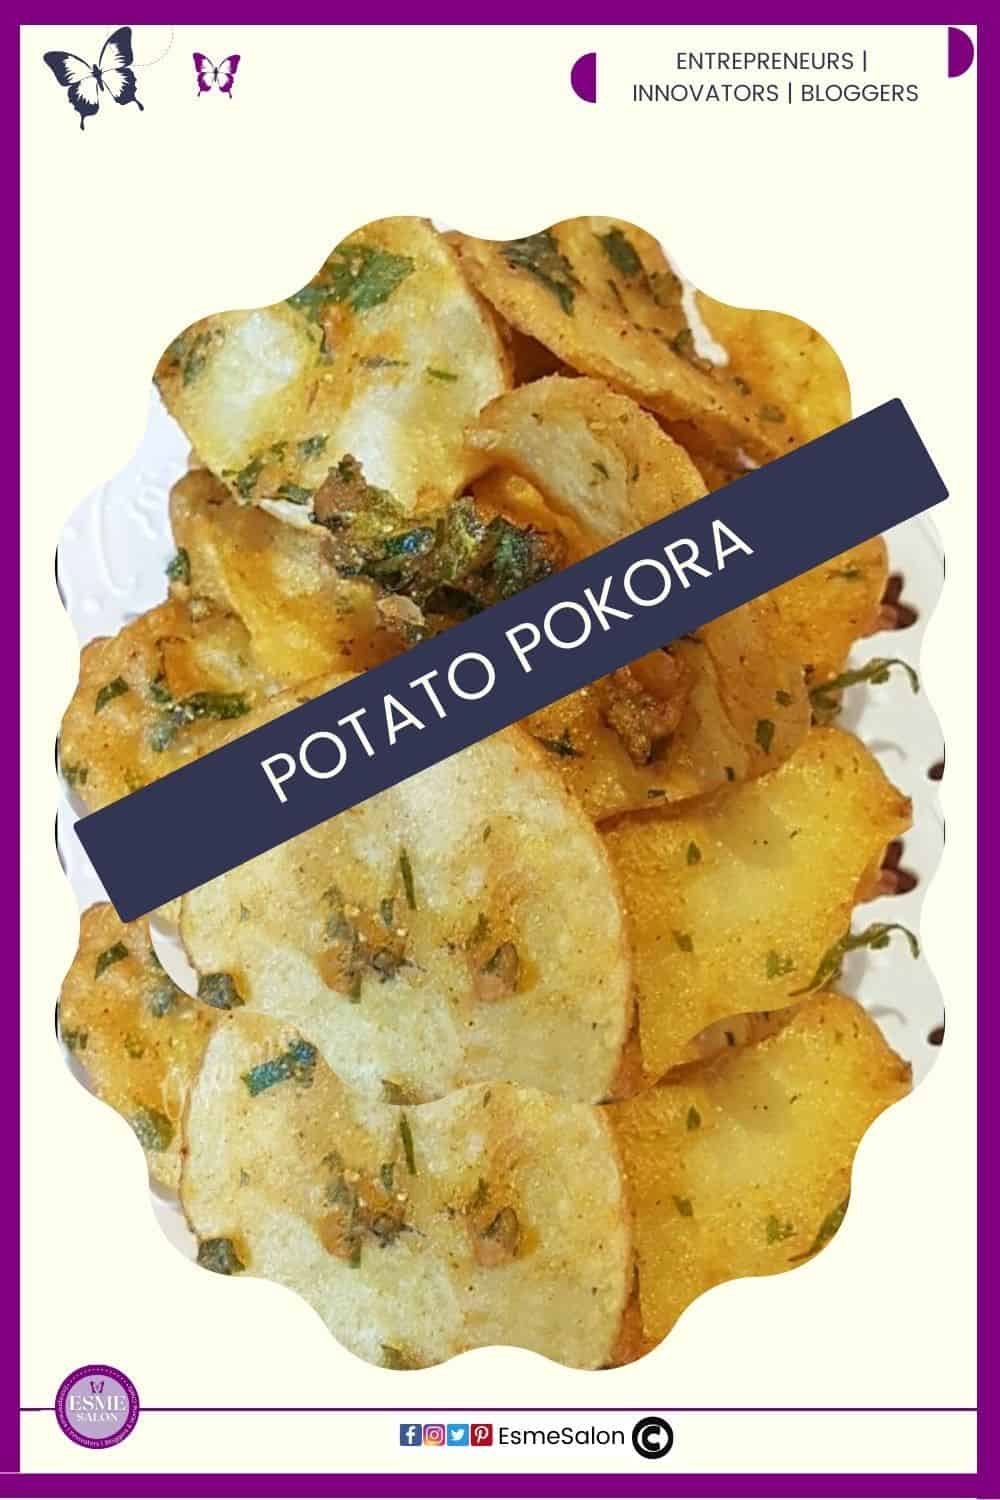 an image of Potato Pokora